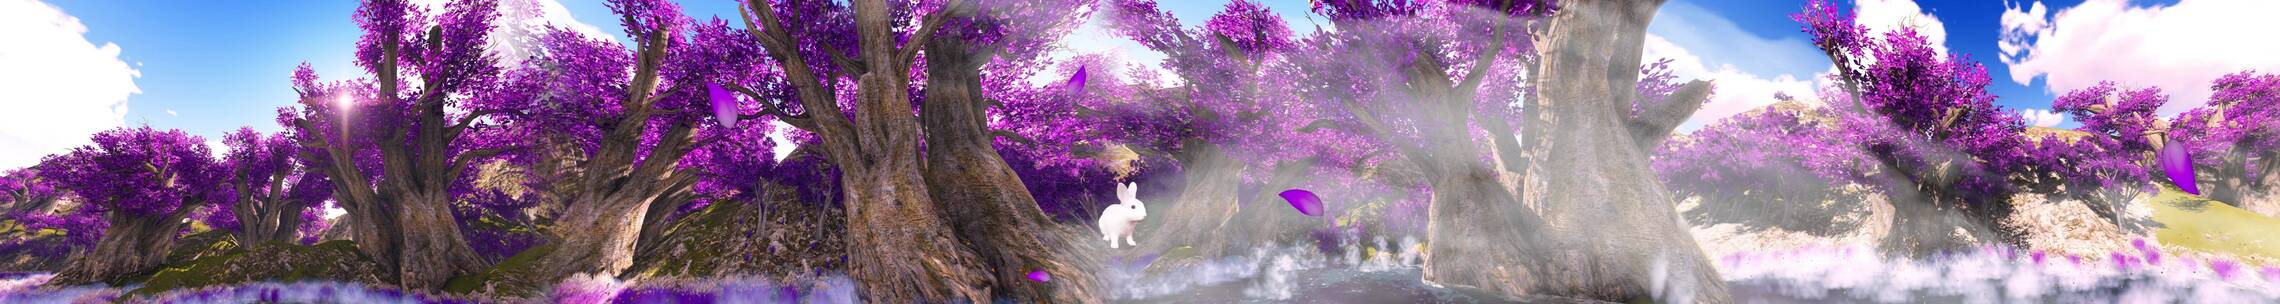 唯美树林兔子 薰衣草花瓣 蓝天白云 大树